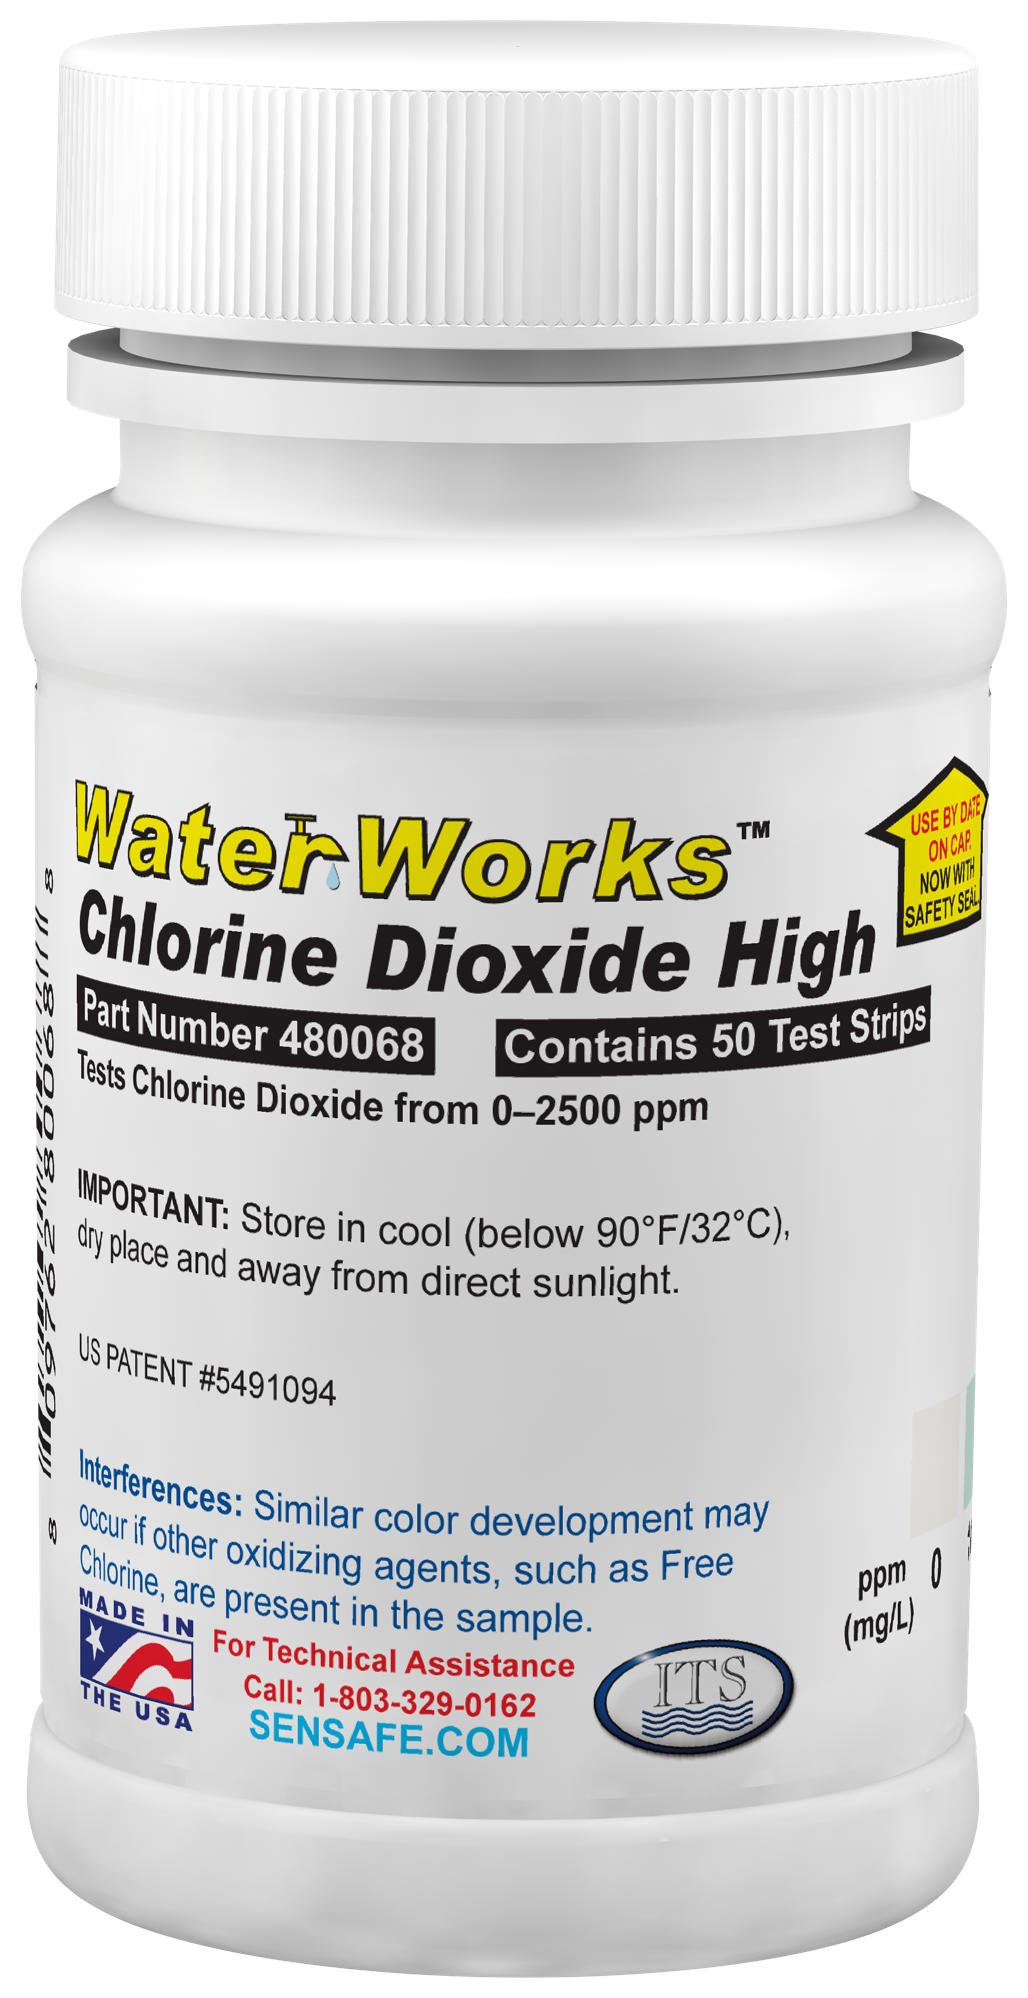 Chlorine Dioxide High bottle